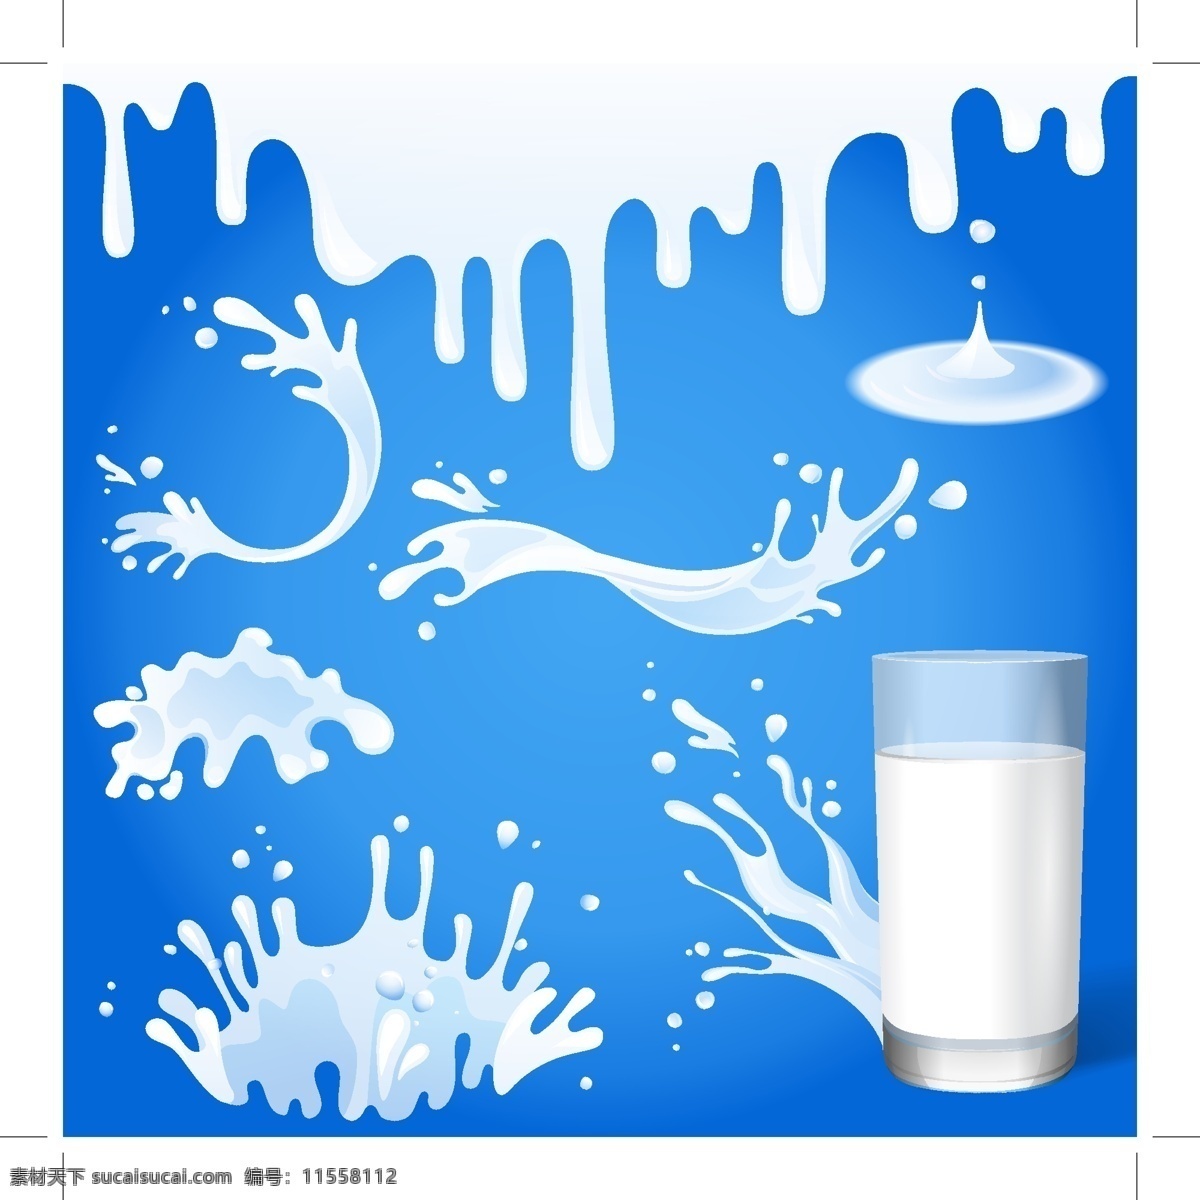 卡通奶花 卡通 奶花 杯子 牛奶 饮料 食物 生活百科 矢量素材 白色